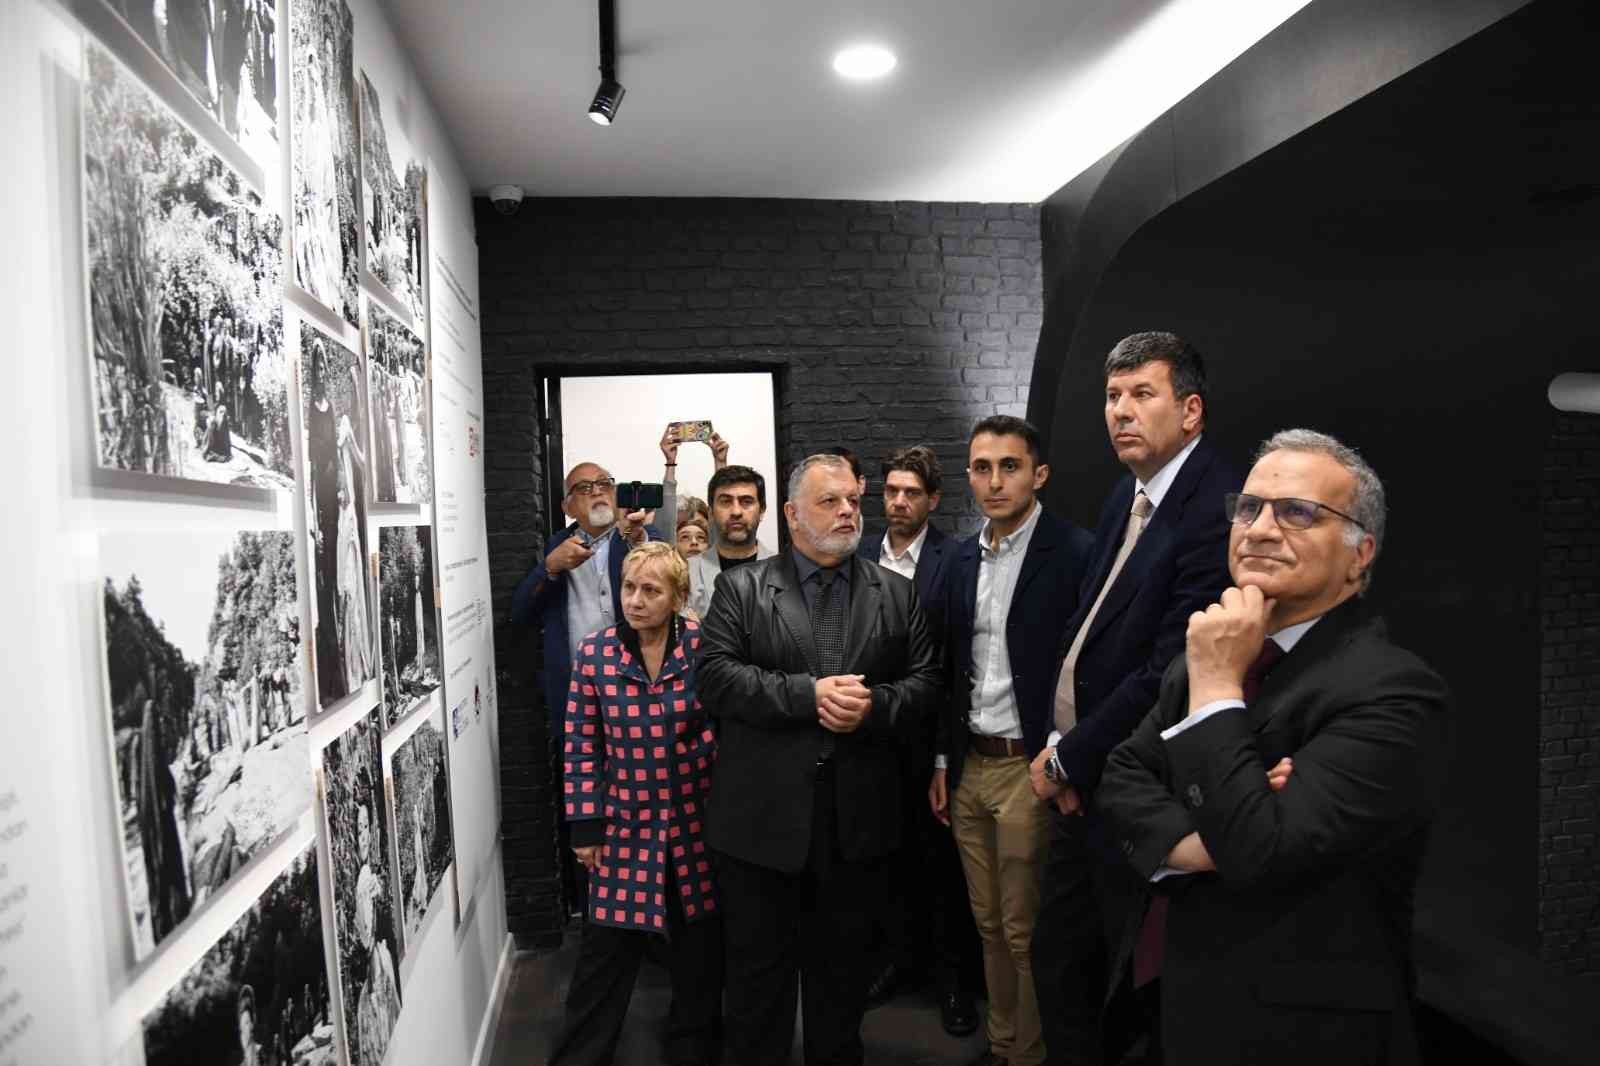 Sinema tarihinin cesur ustası Pier Paolo Pasolini, doğumunun 100’üncü yıldönümünde Kadıköy’de anılıyor. Sinematek/Sinema Evi, toplu film ...